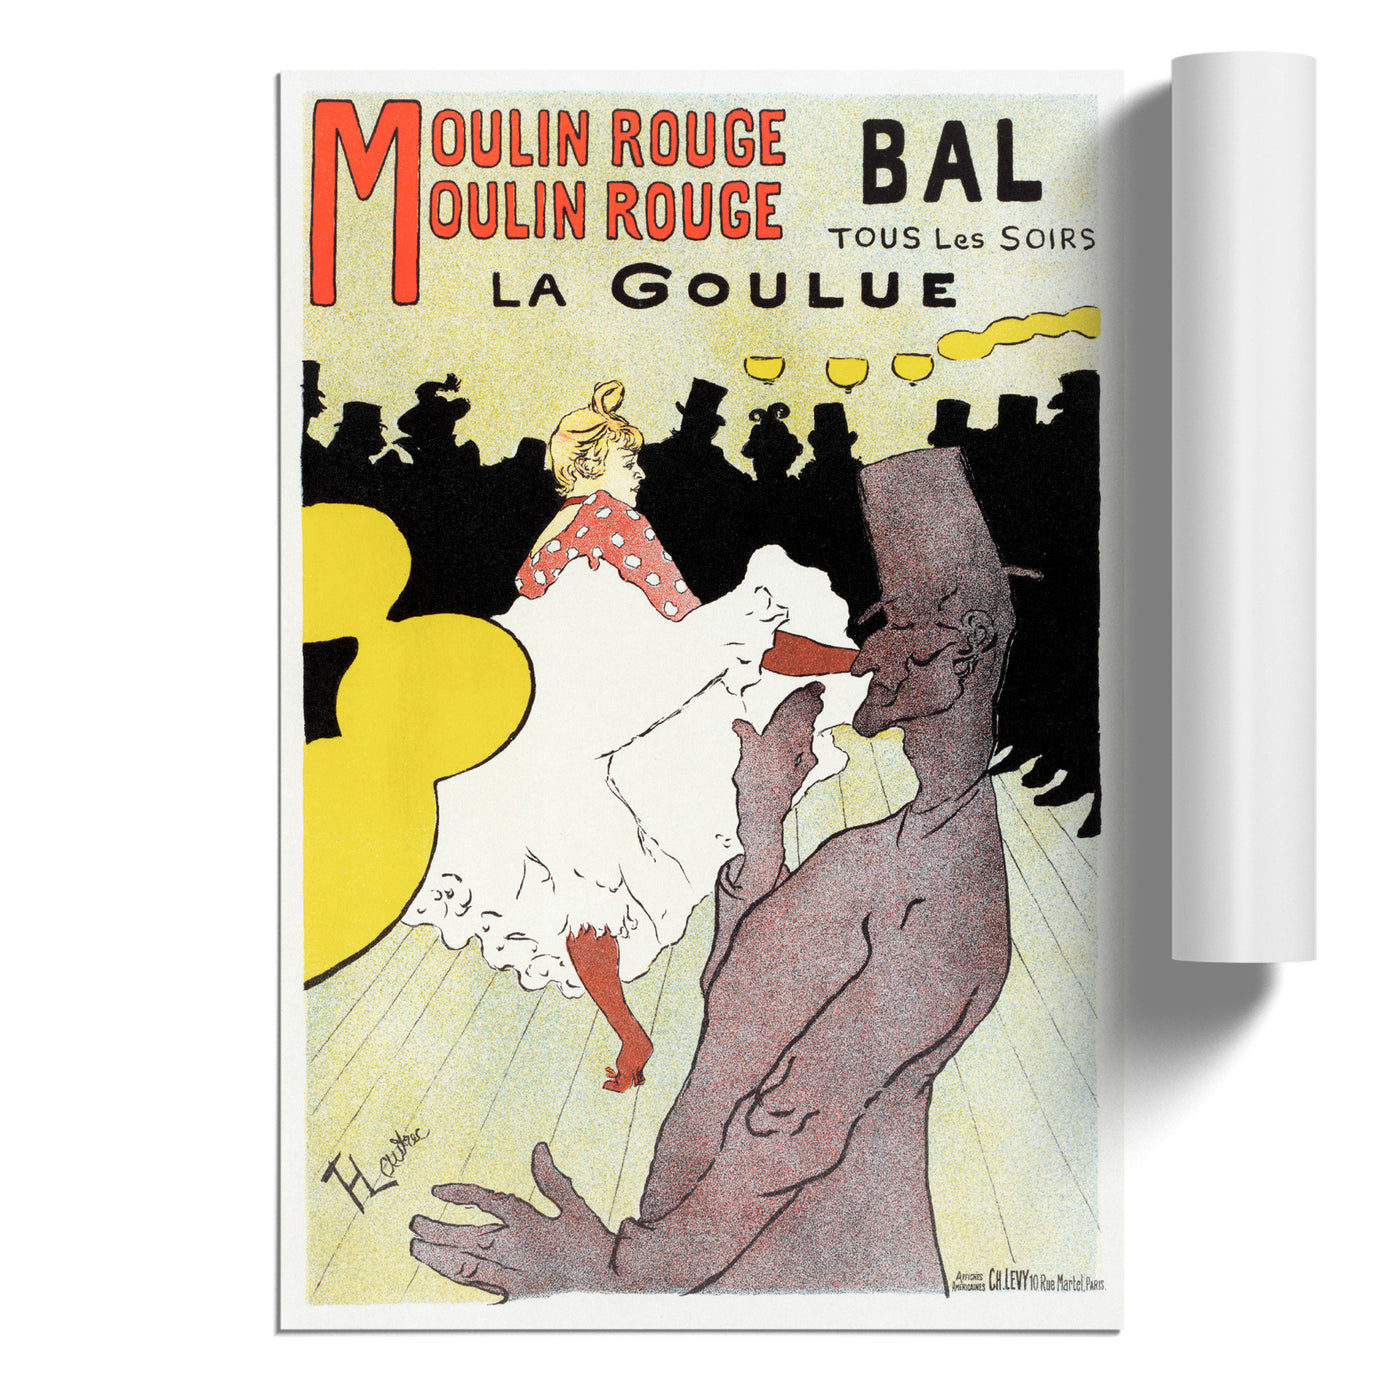 Moulin Rouge La Goulue Vol.2 By Henri De Toulouse Lautrec